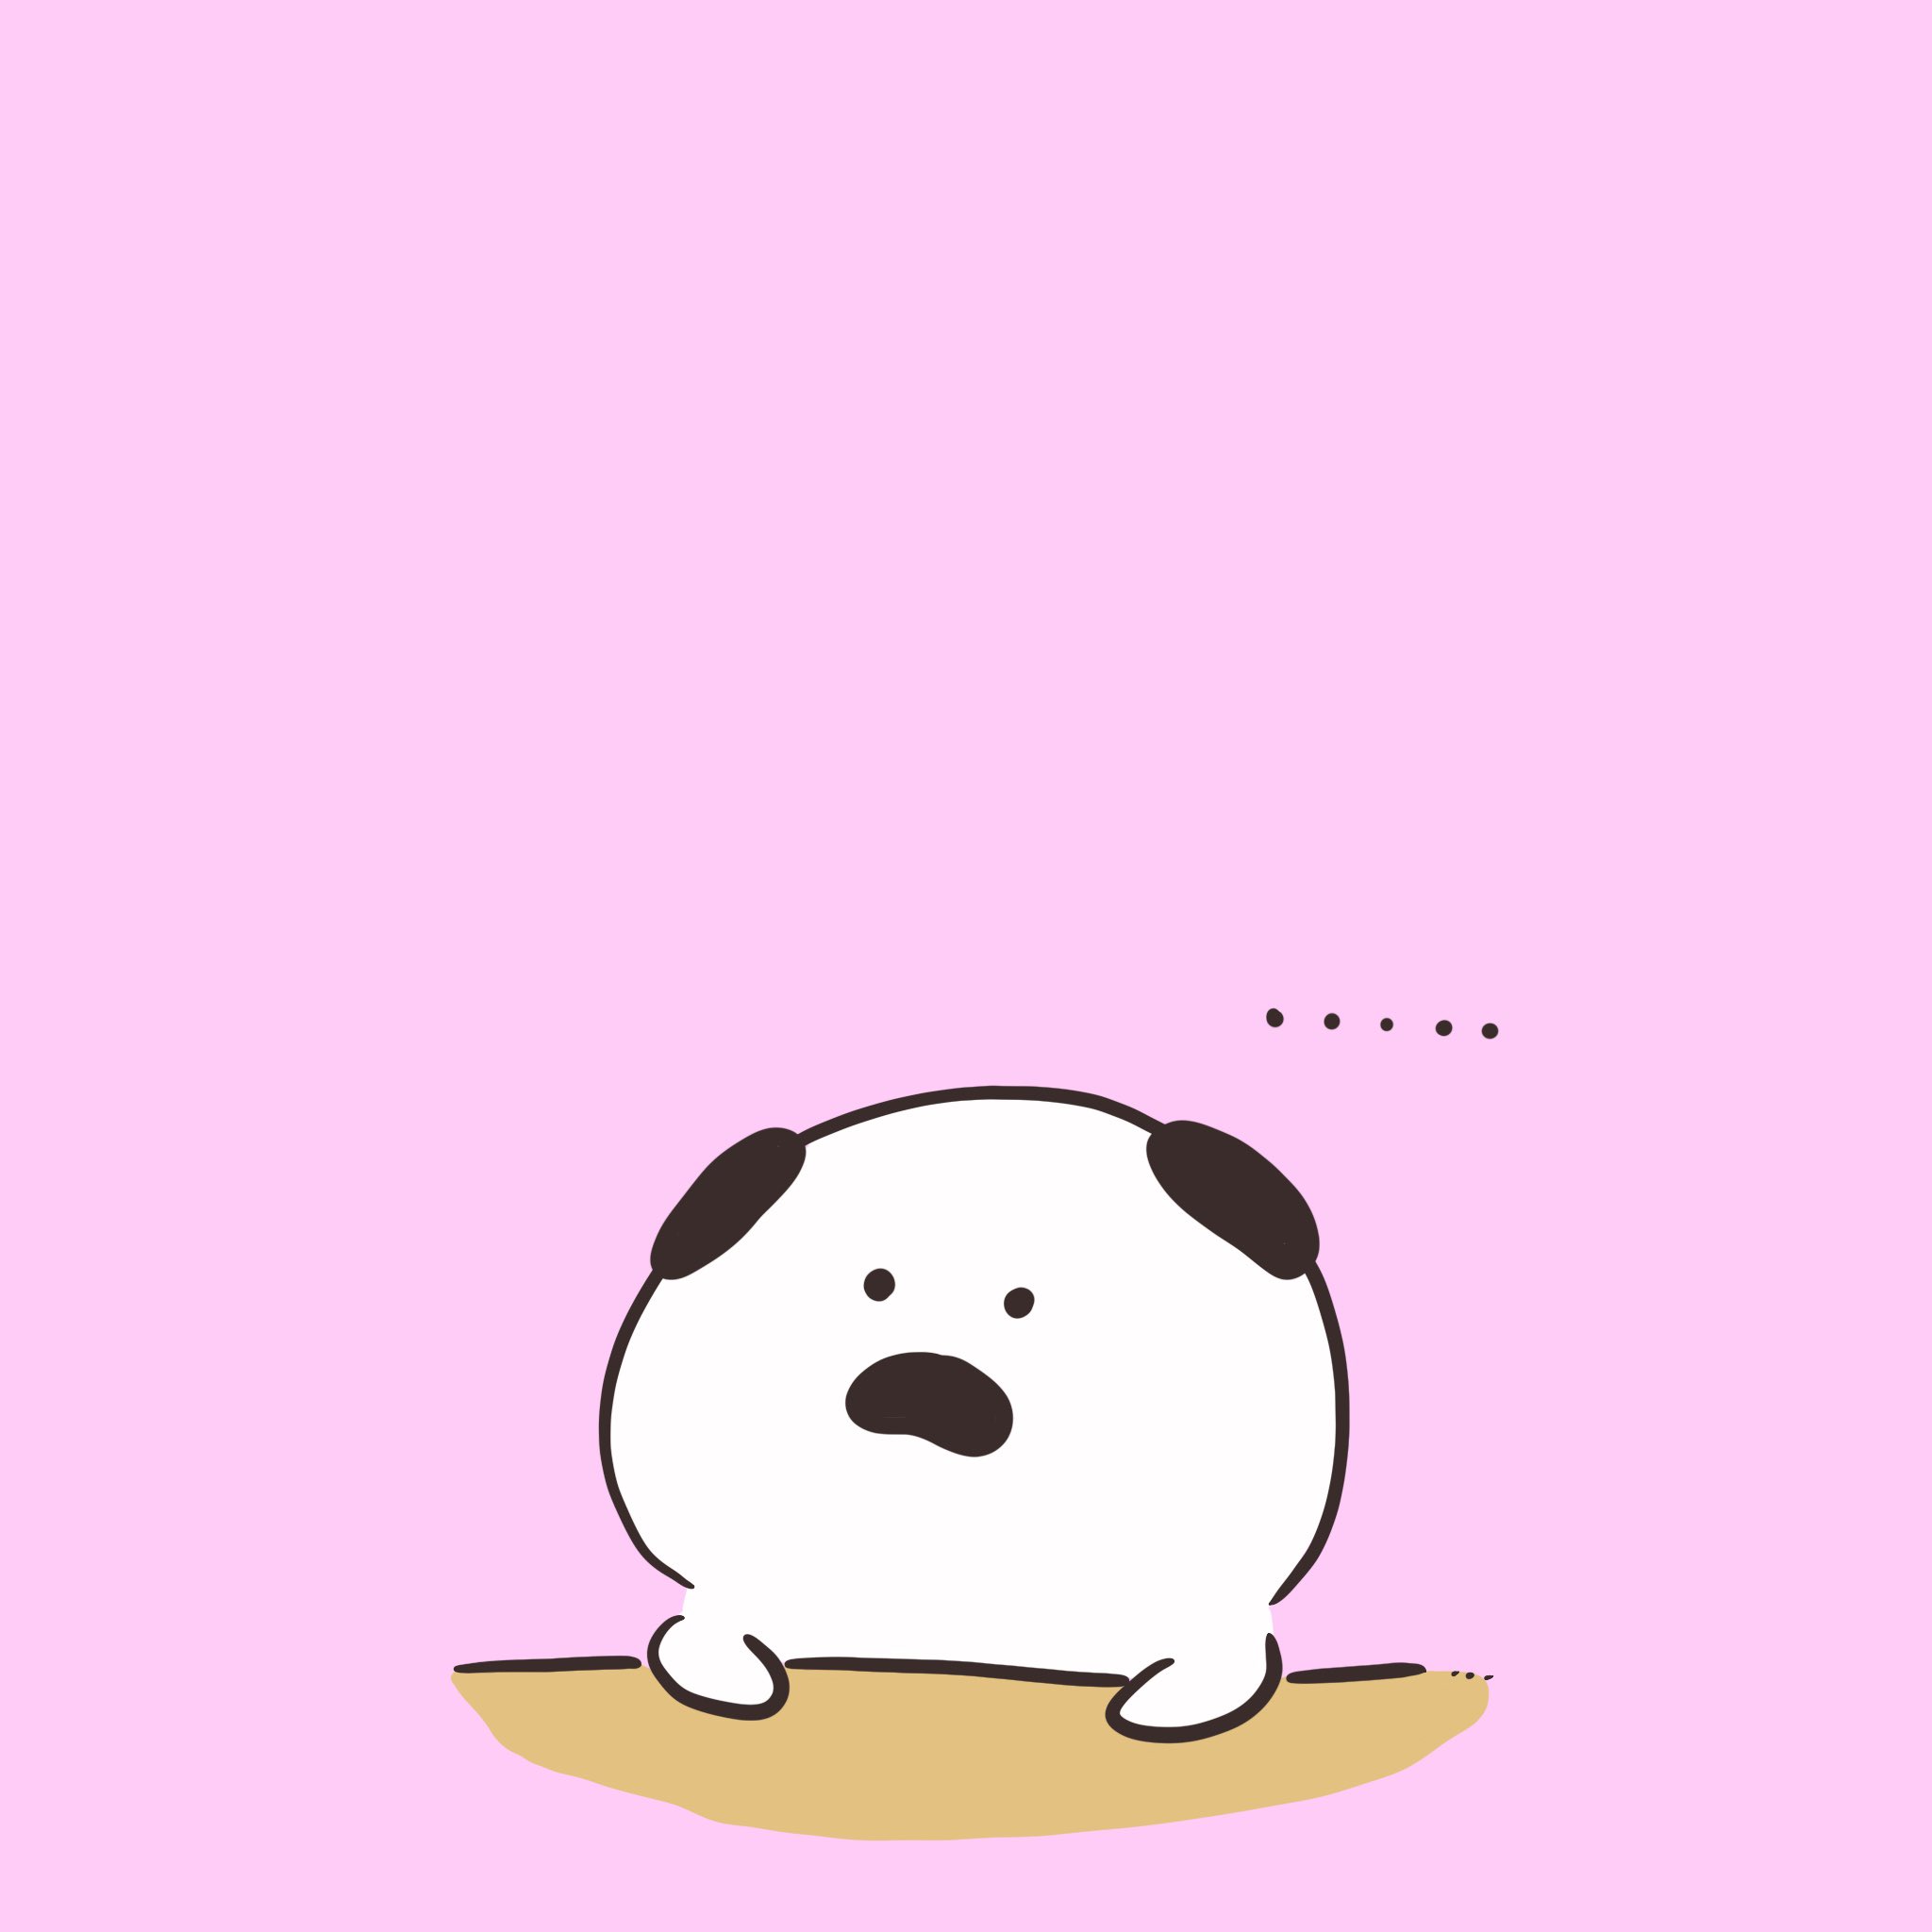 Manuken むっちゃアイスクリーム食べたいけど あたりめで我慢するまぬけん 絵描きさんと繋がりたい マスコット Pug パグ イラスト マンガ まぬけん トマト かわいい いぬ Japan イラスト王国 Illustrator アイス あたりめ T Co